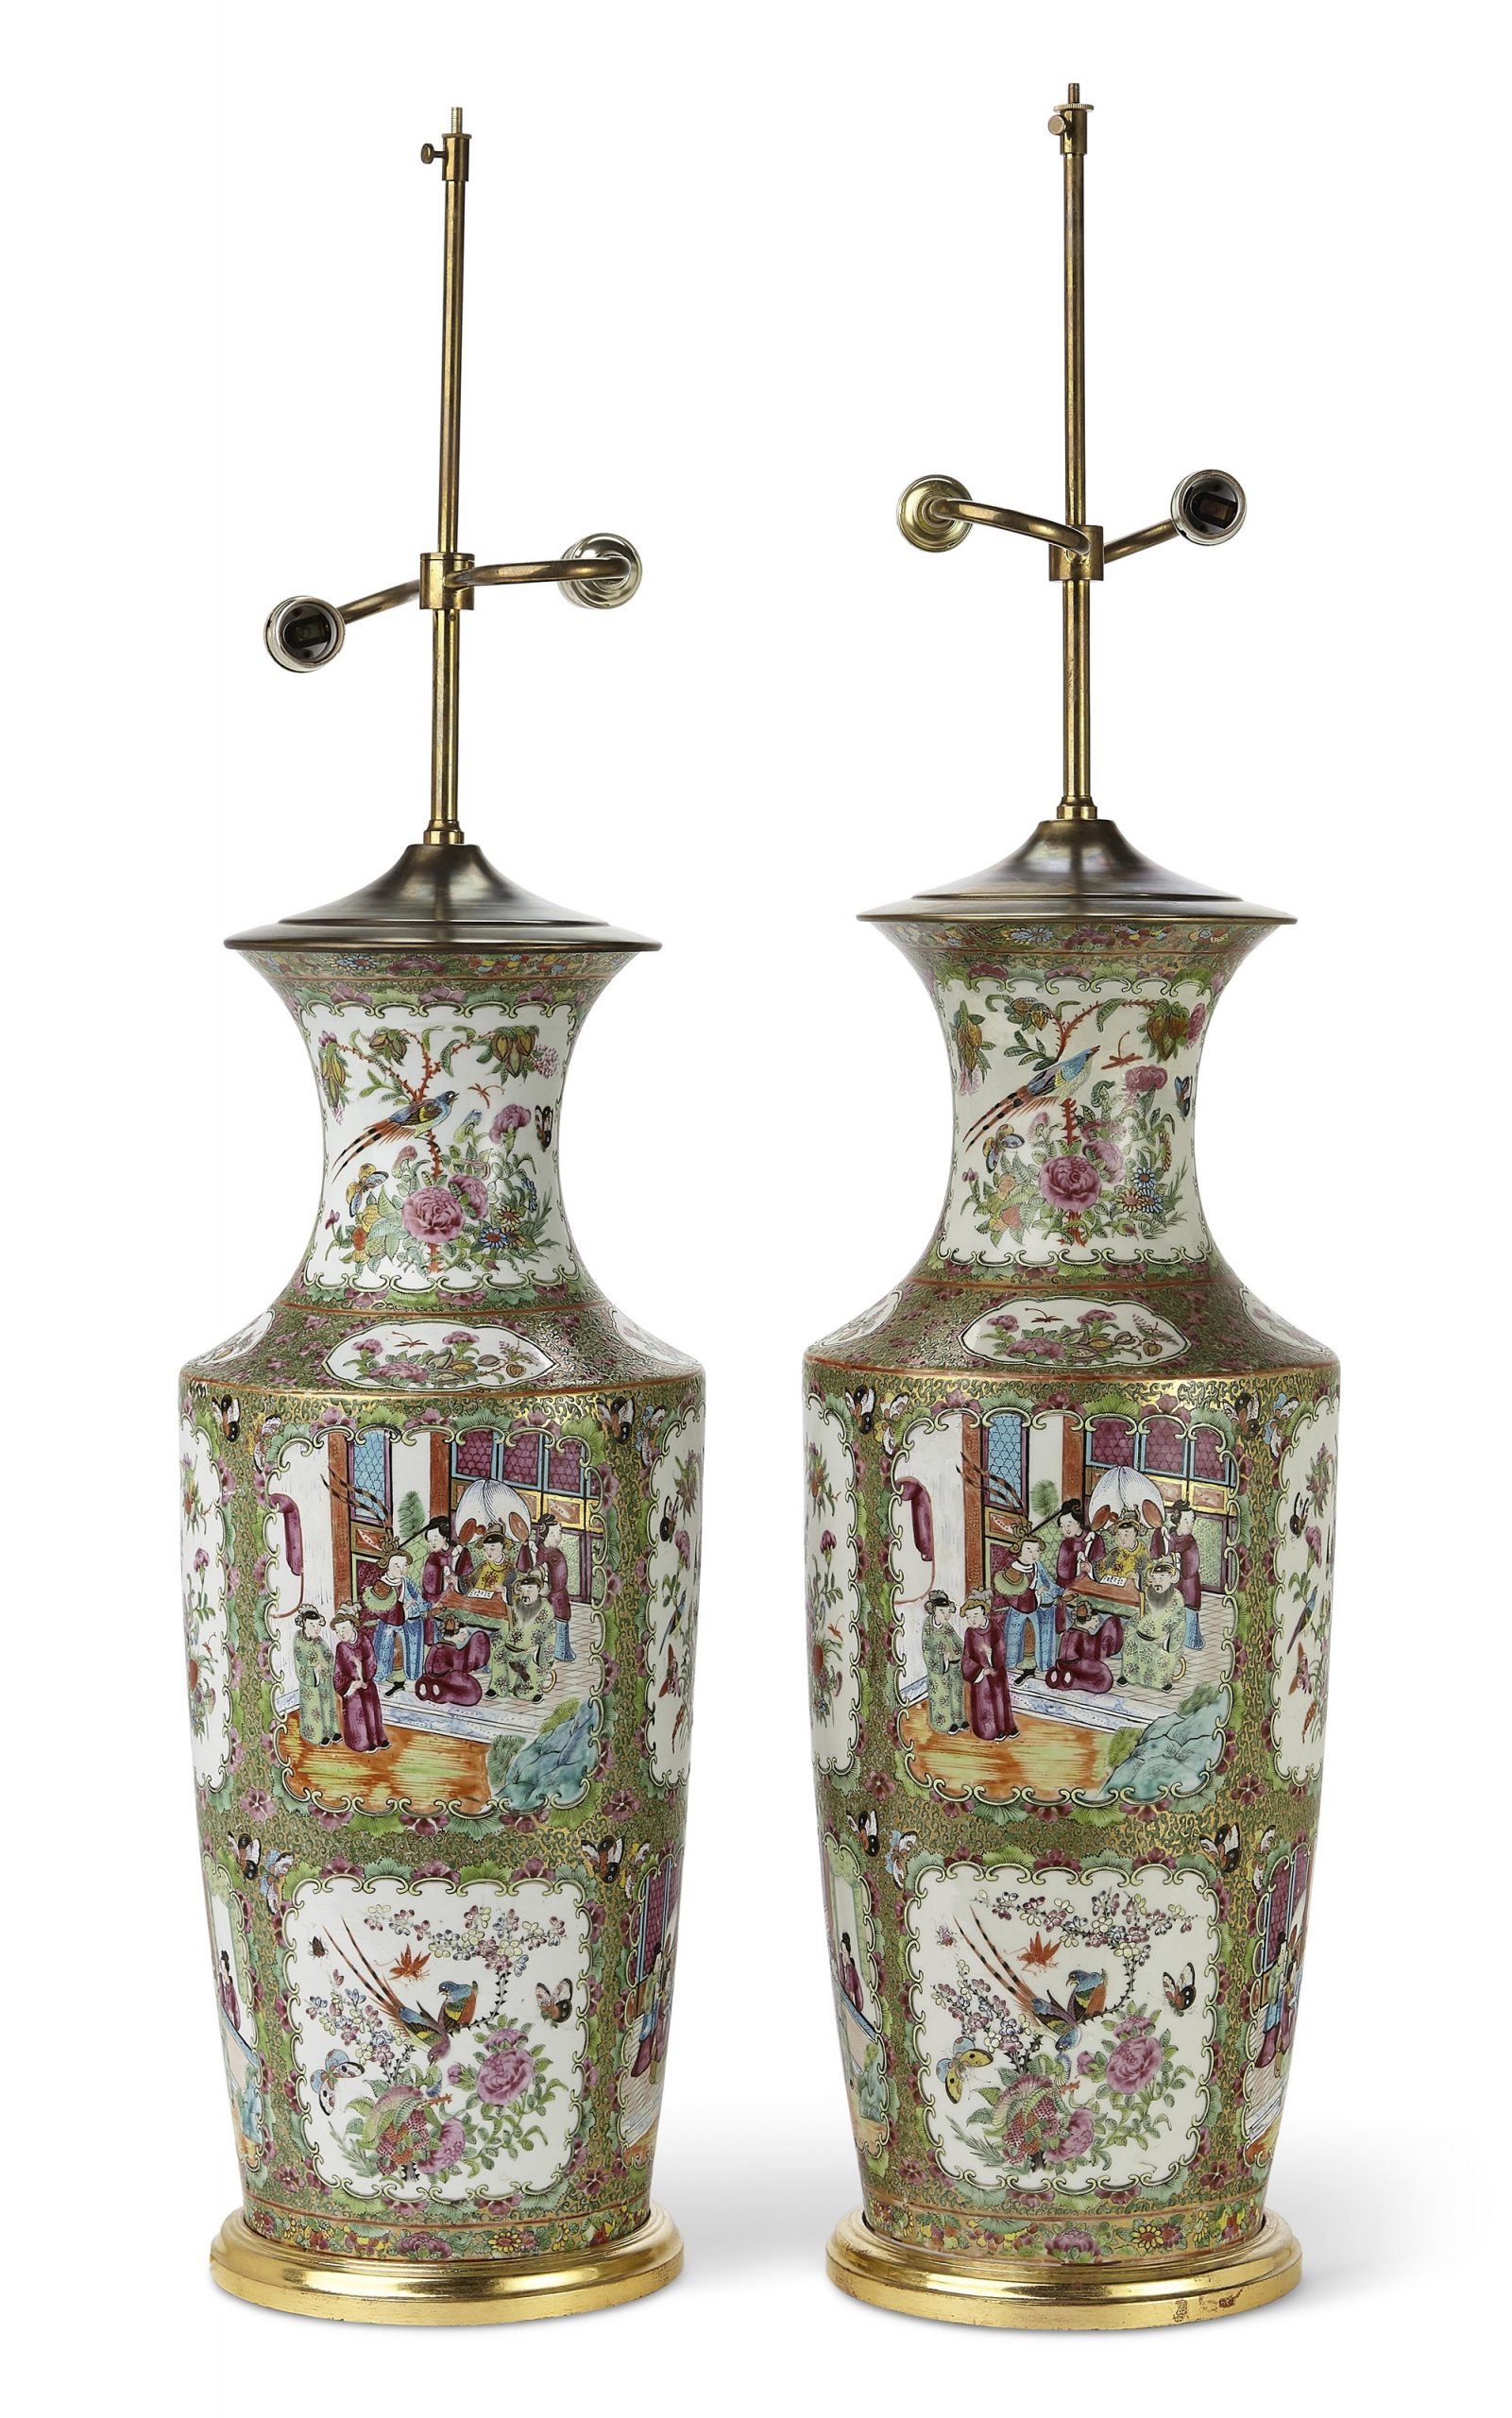 私人收藏品，凯米勒藏品
一对中国外销“广彩”大花瓶，改装为台灯
19世纪